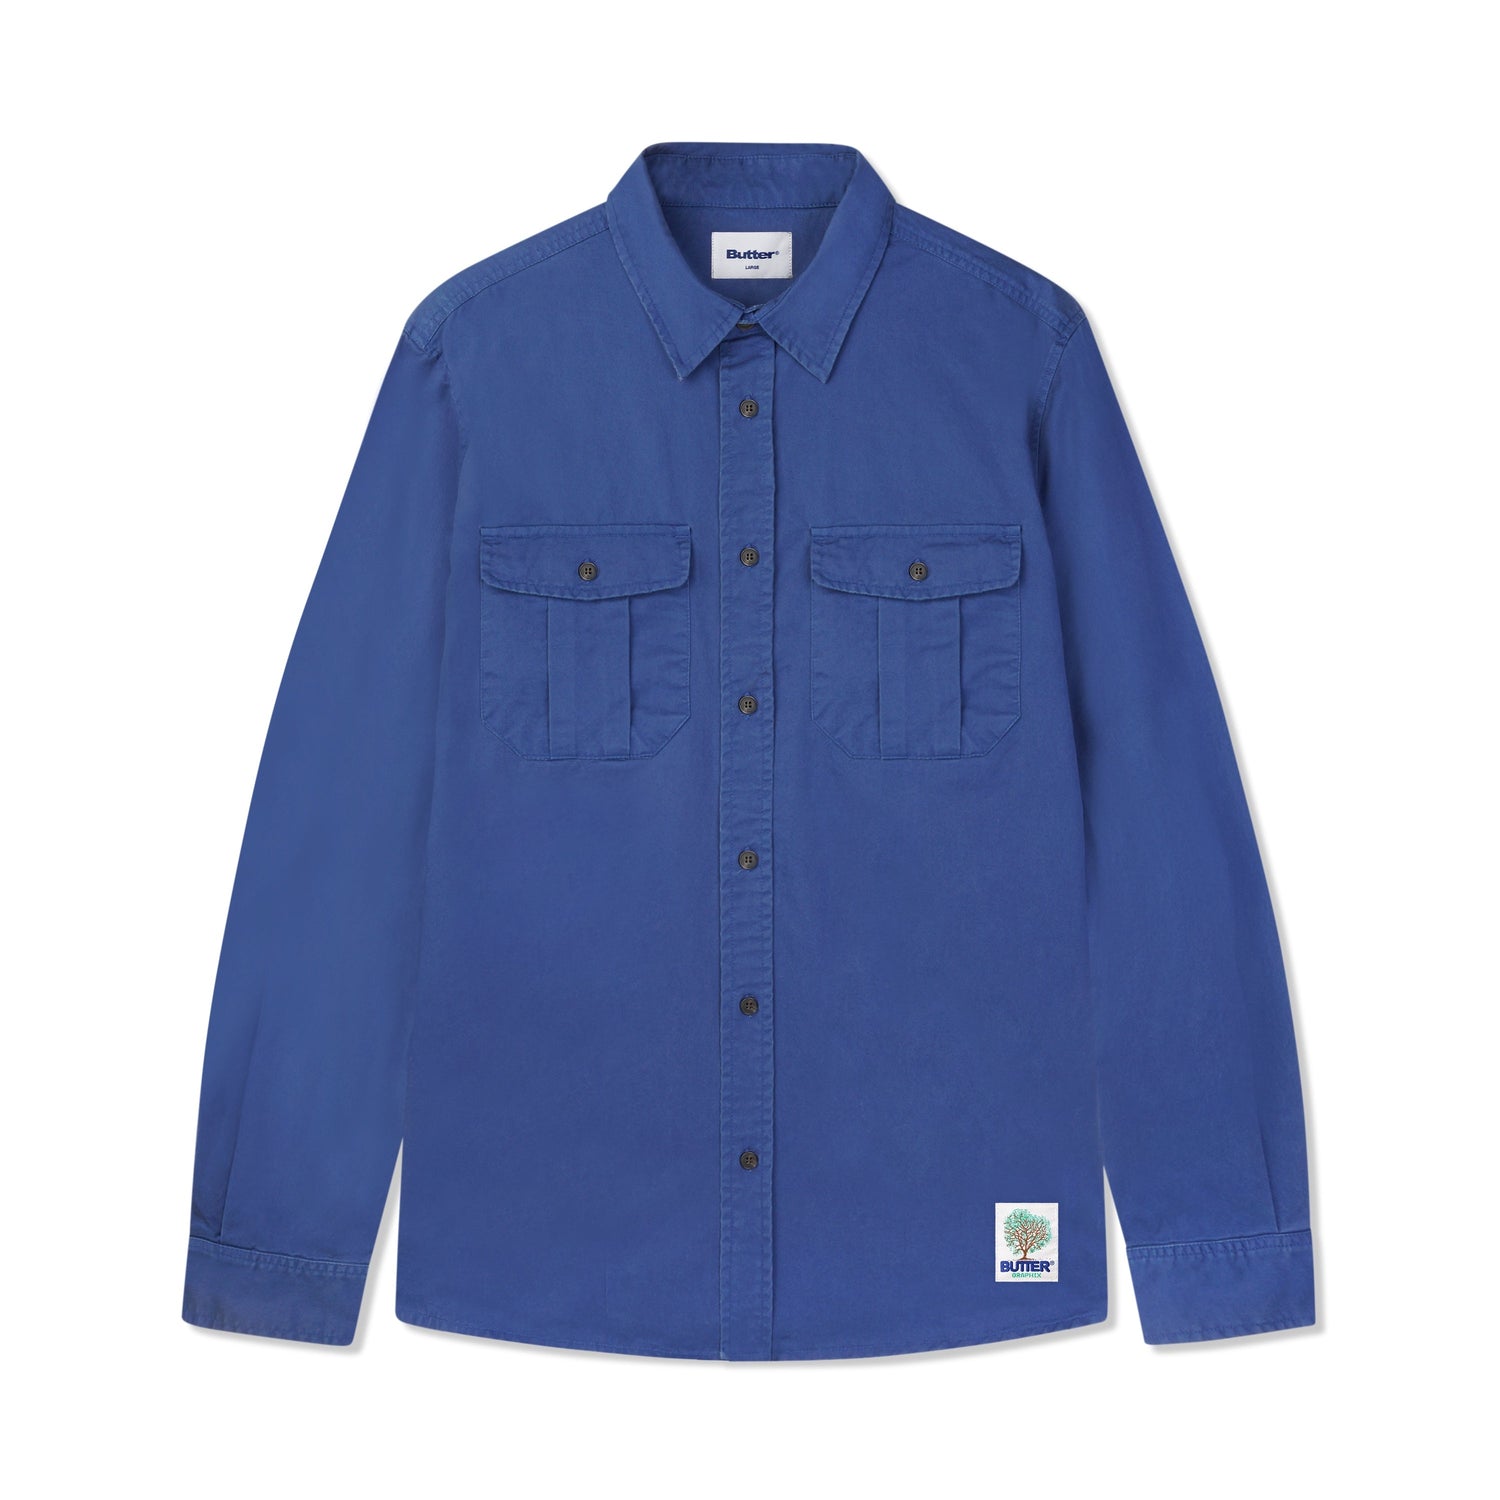 Washed Pocket L/S Shirt, Work Blue